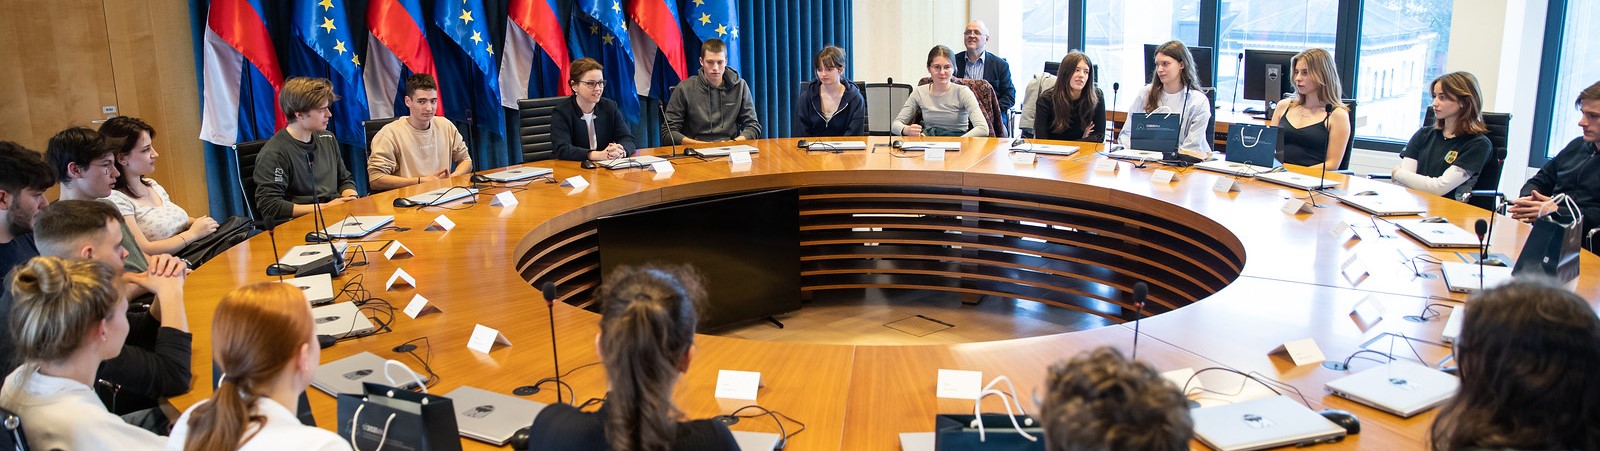 Dijaki in dijakinje sedijo za okroglo mizo, za katero običajno sedijo ministri in ministrice med sejo vlade